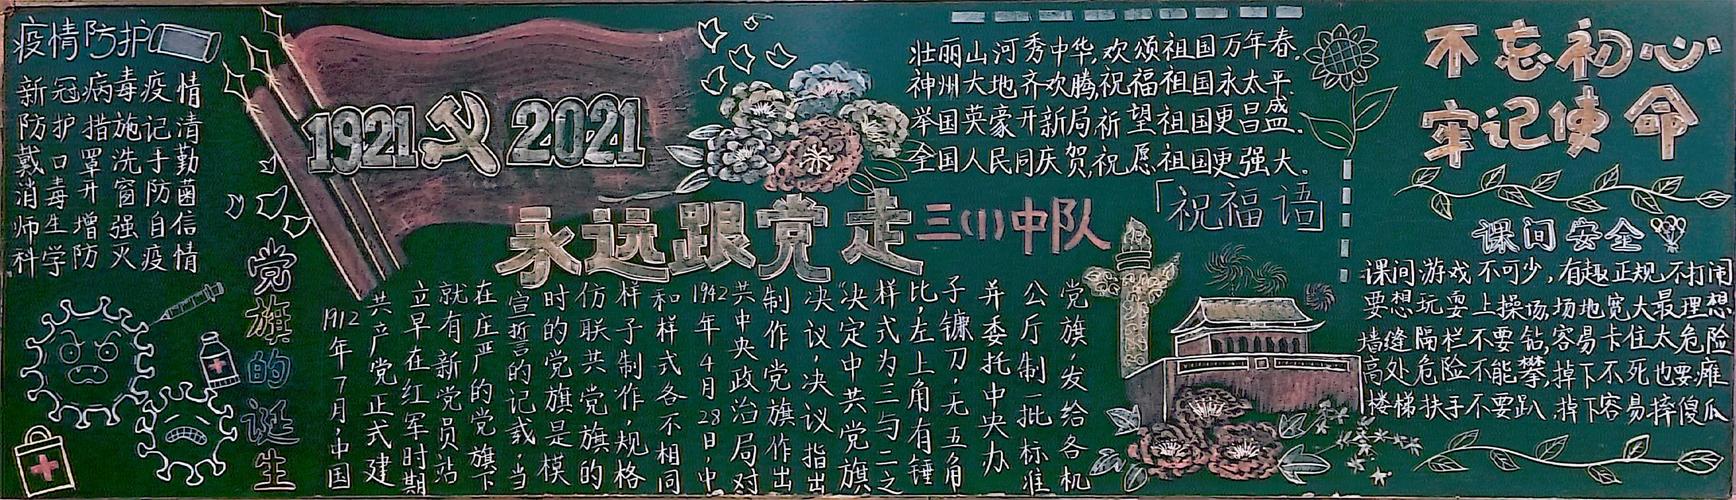 党走争做新时代接班人---徐州市西朱小学庆建党100周年黑板报评比